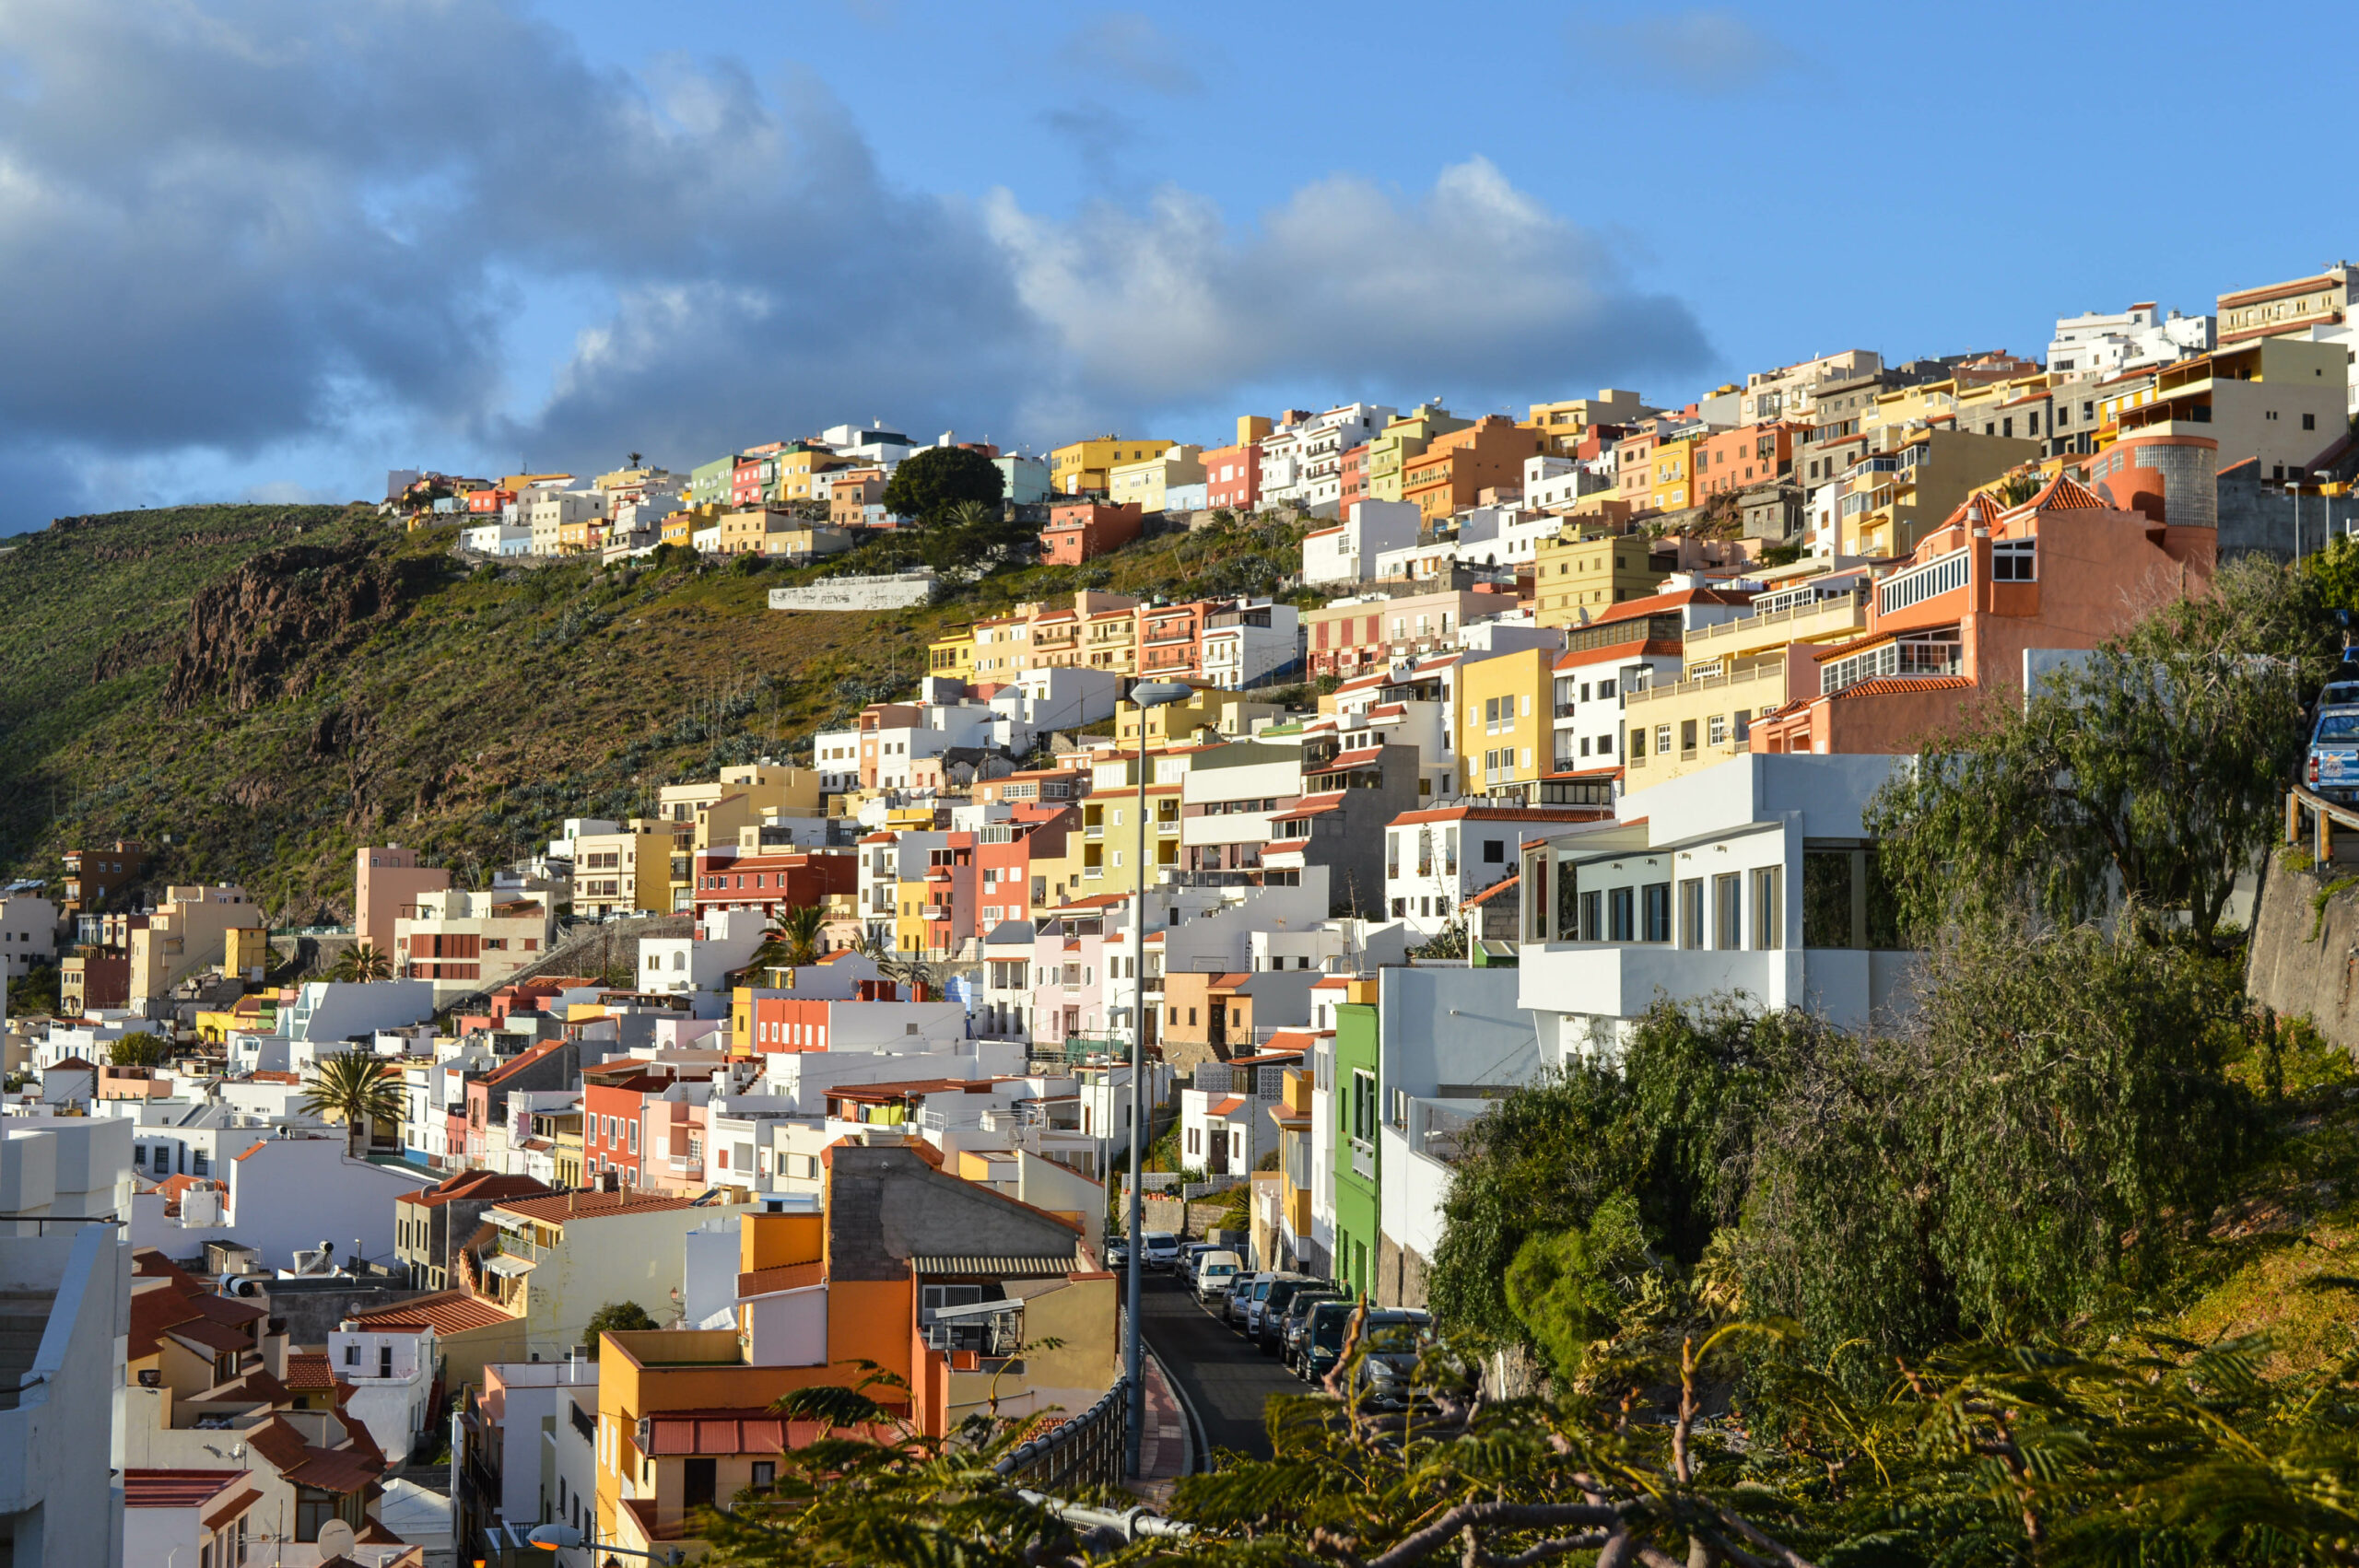 Maisons au multiples couleurs, orange/jaunes/rouge/blanches, grimpant sur la montagne verte entourant San Sebastian de la Gomera